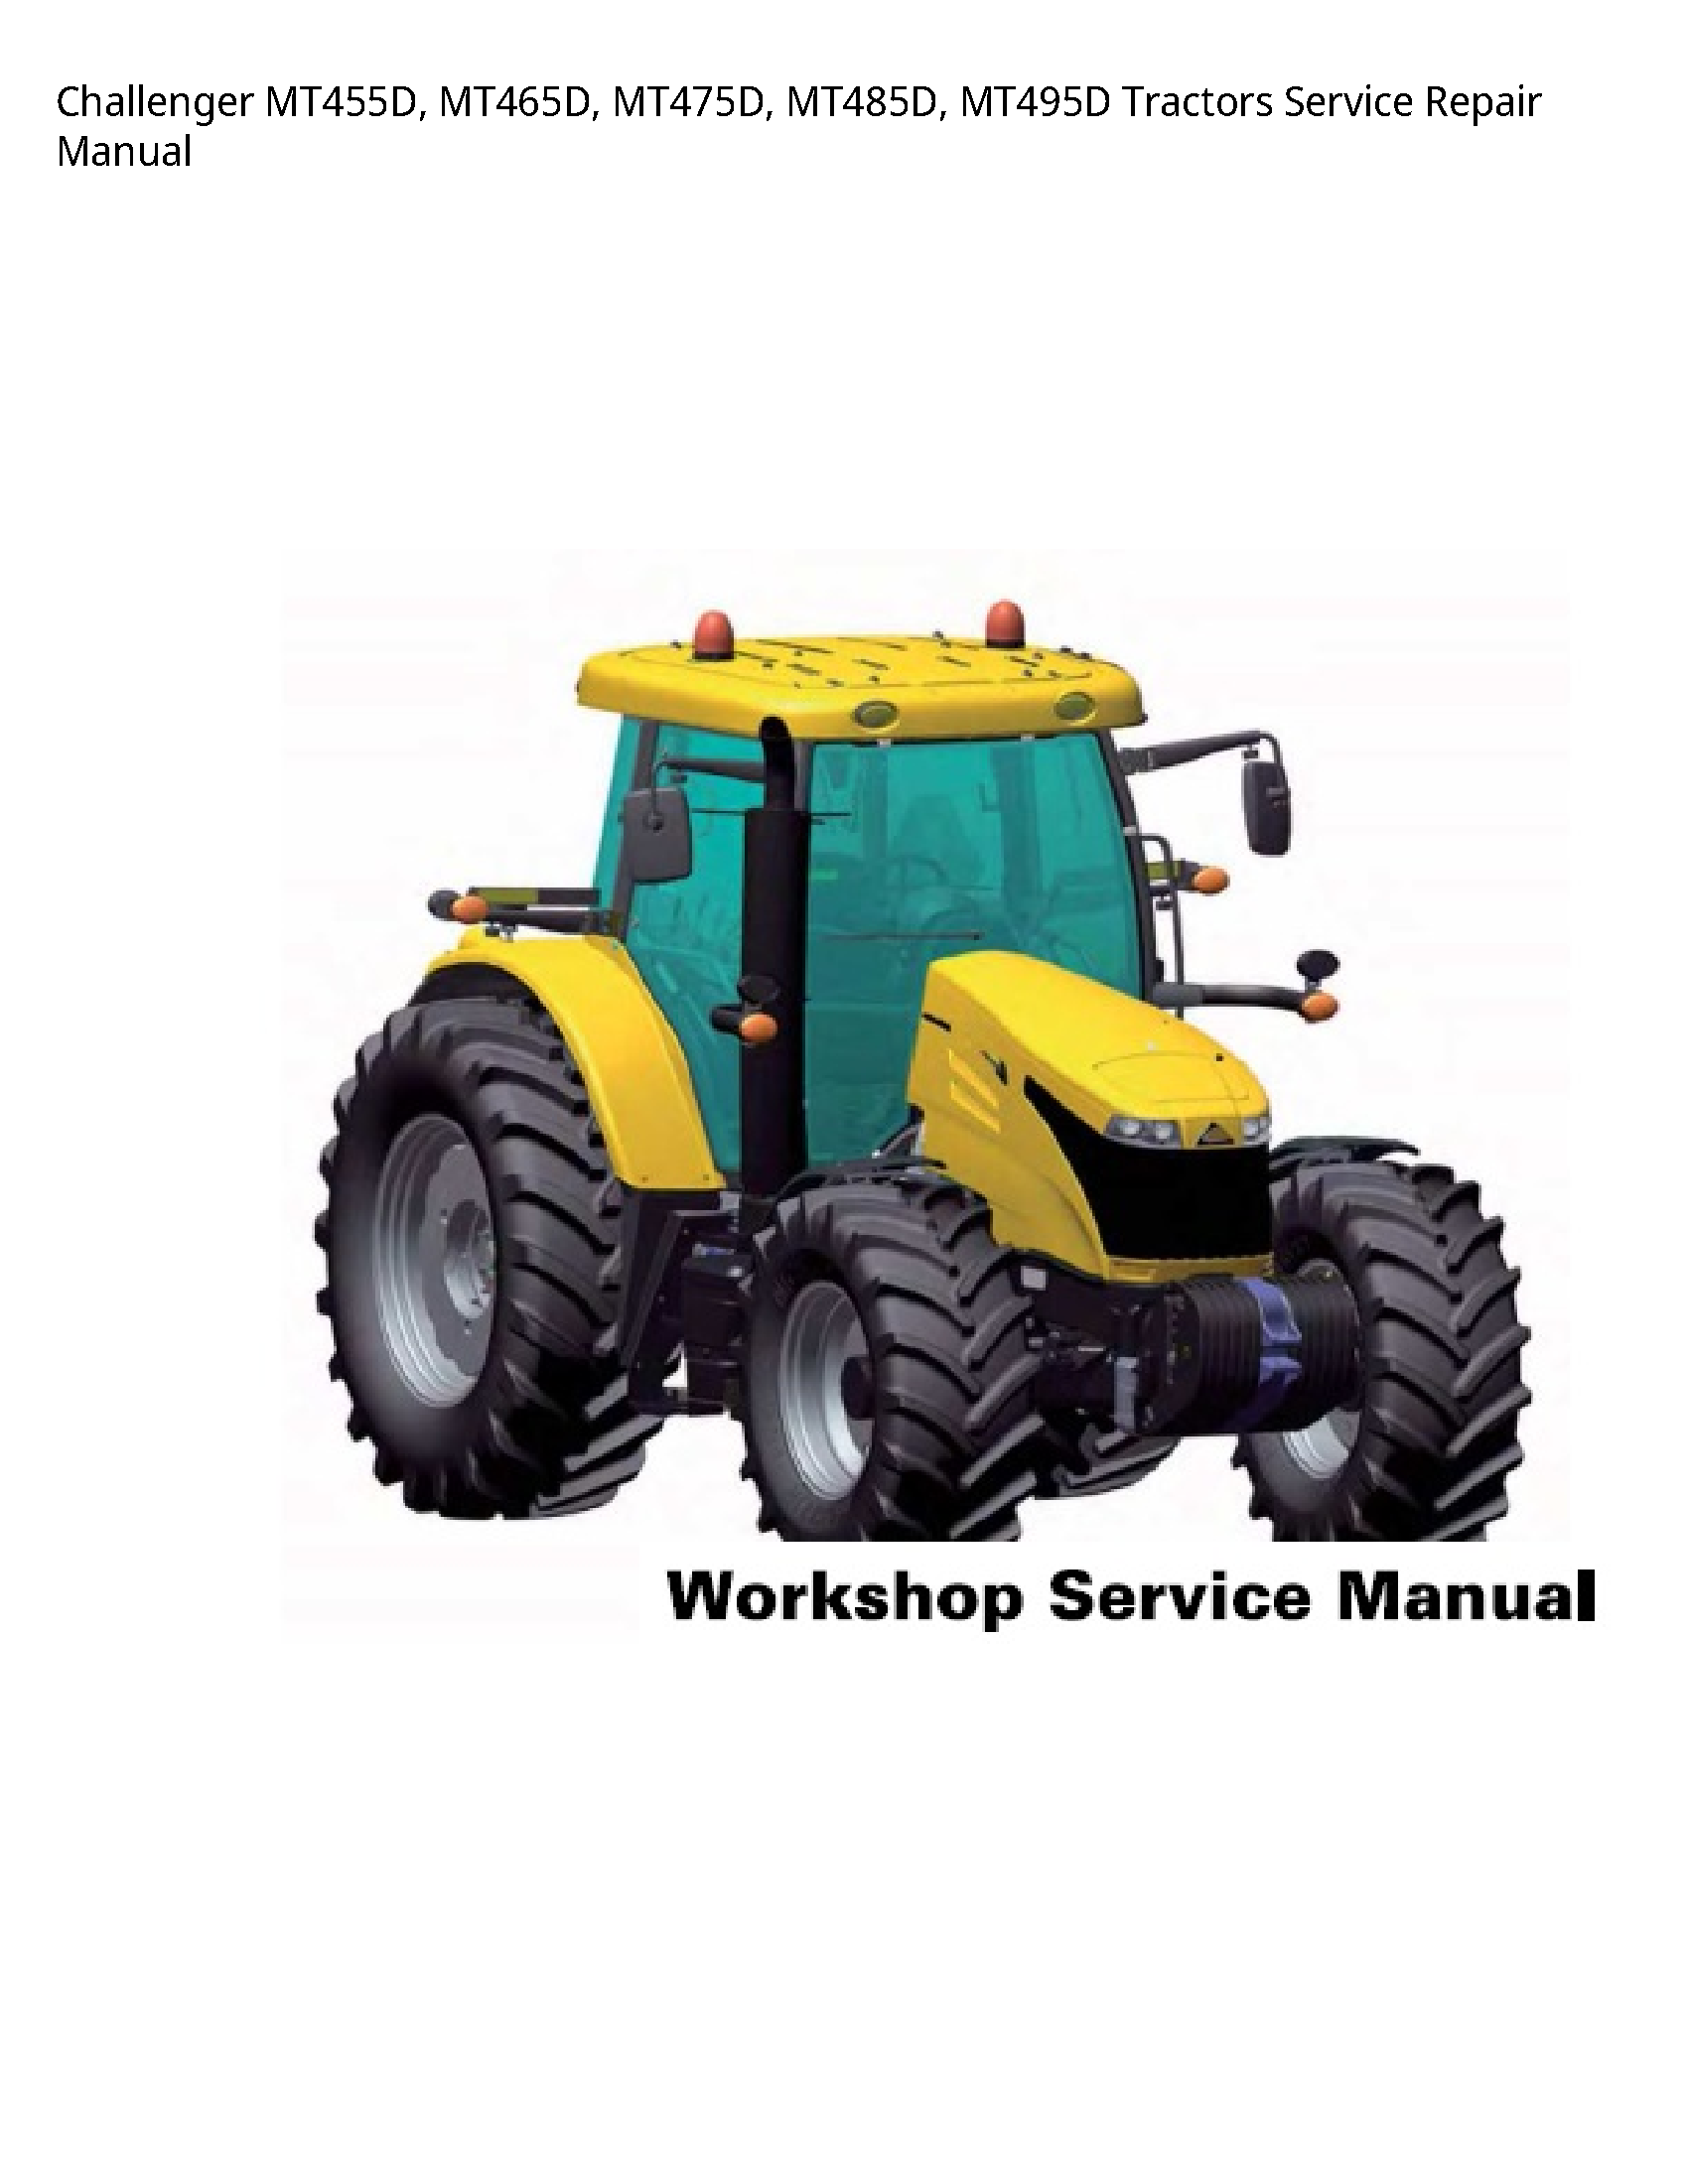 Challenger MT455D Tractors manual